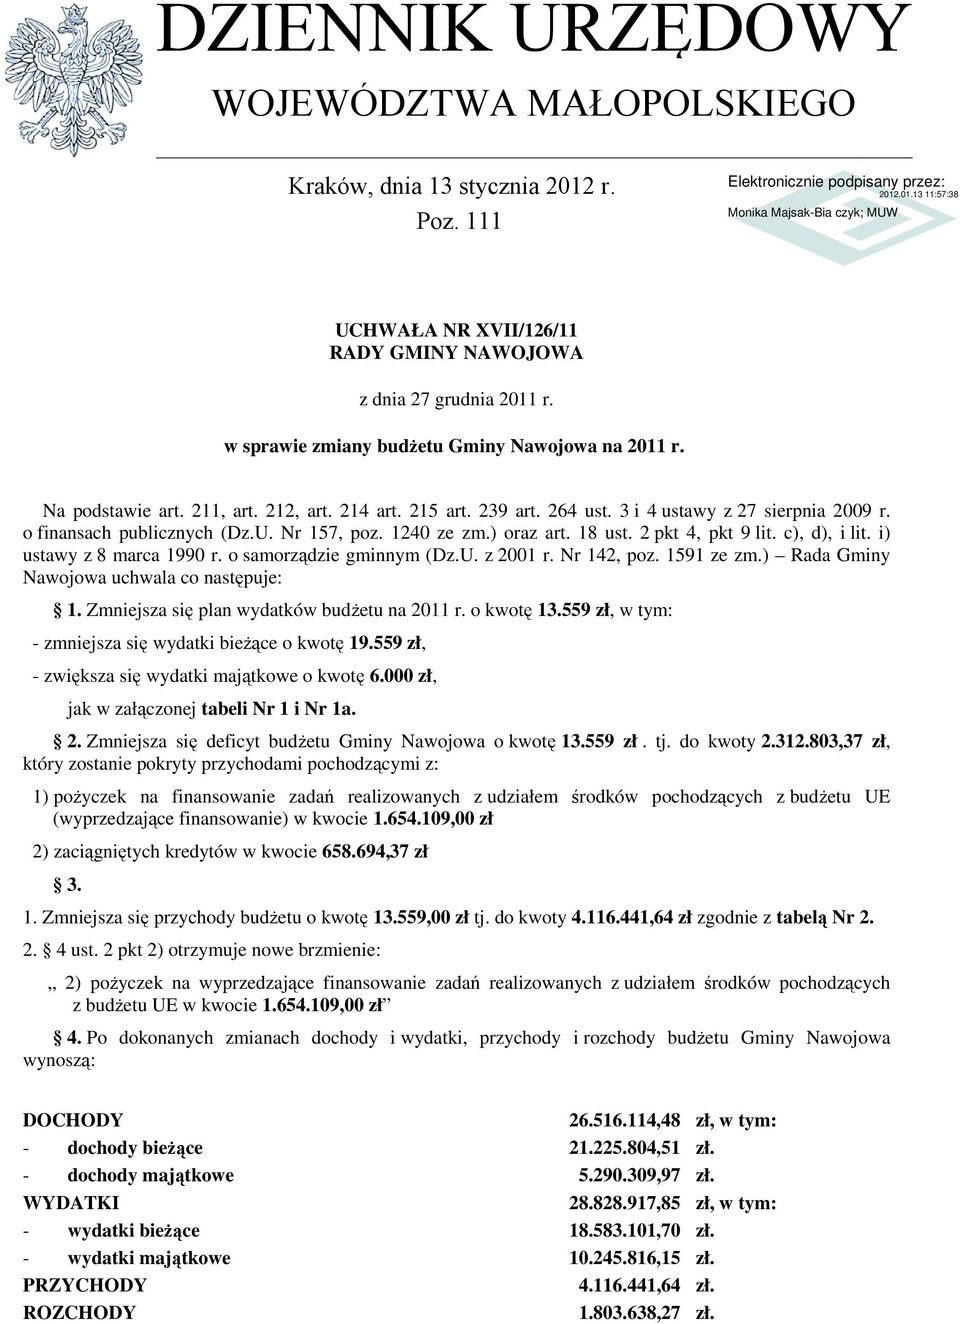 i) ustawy z 8 marca 1990 r. o samorządzie gminnym (Dz.U. z 2001 r. Nr 142, poz. 1591 ze zm.) Rada Gminy Nawojowa uchwala co następuje: 1. Zmniejsza się plan wydatków budżetu na 2011 r. o kwotę 13.